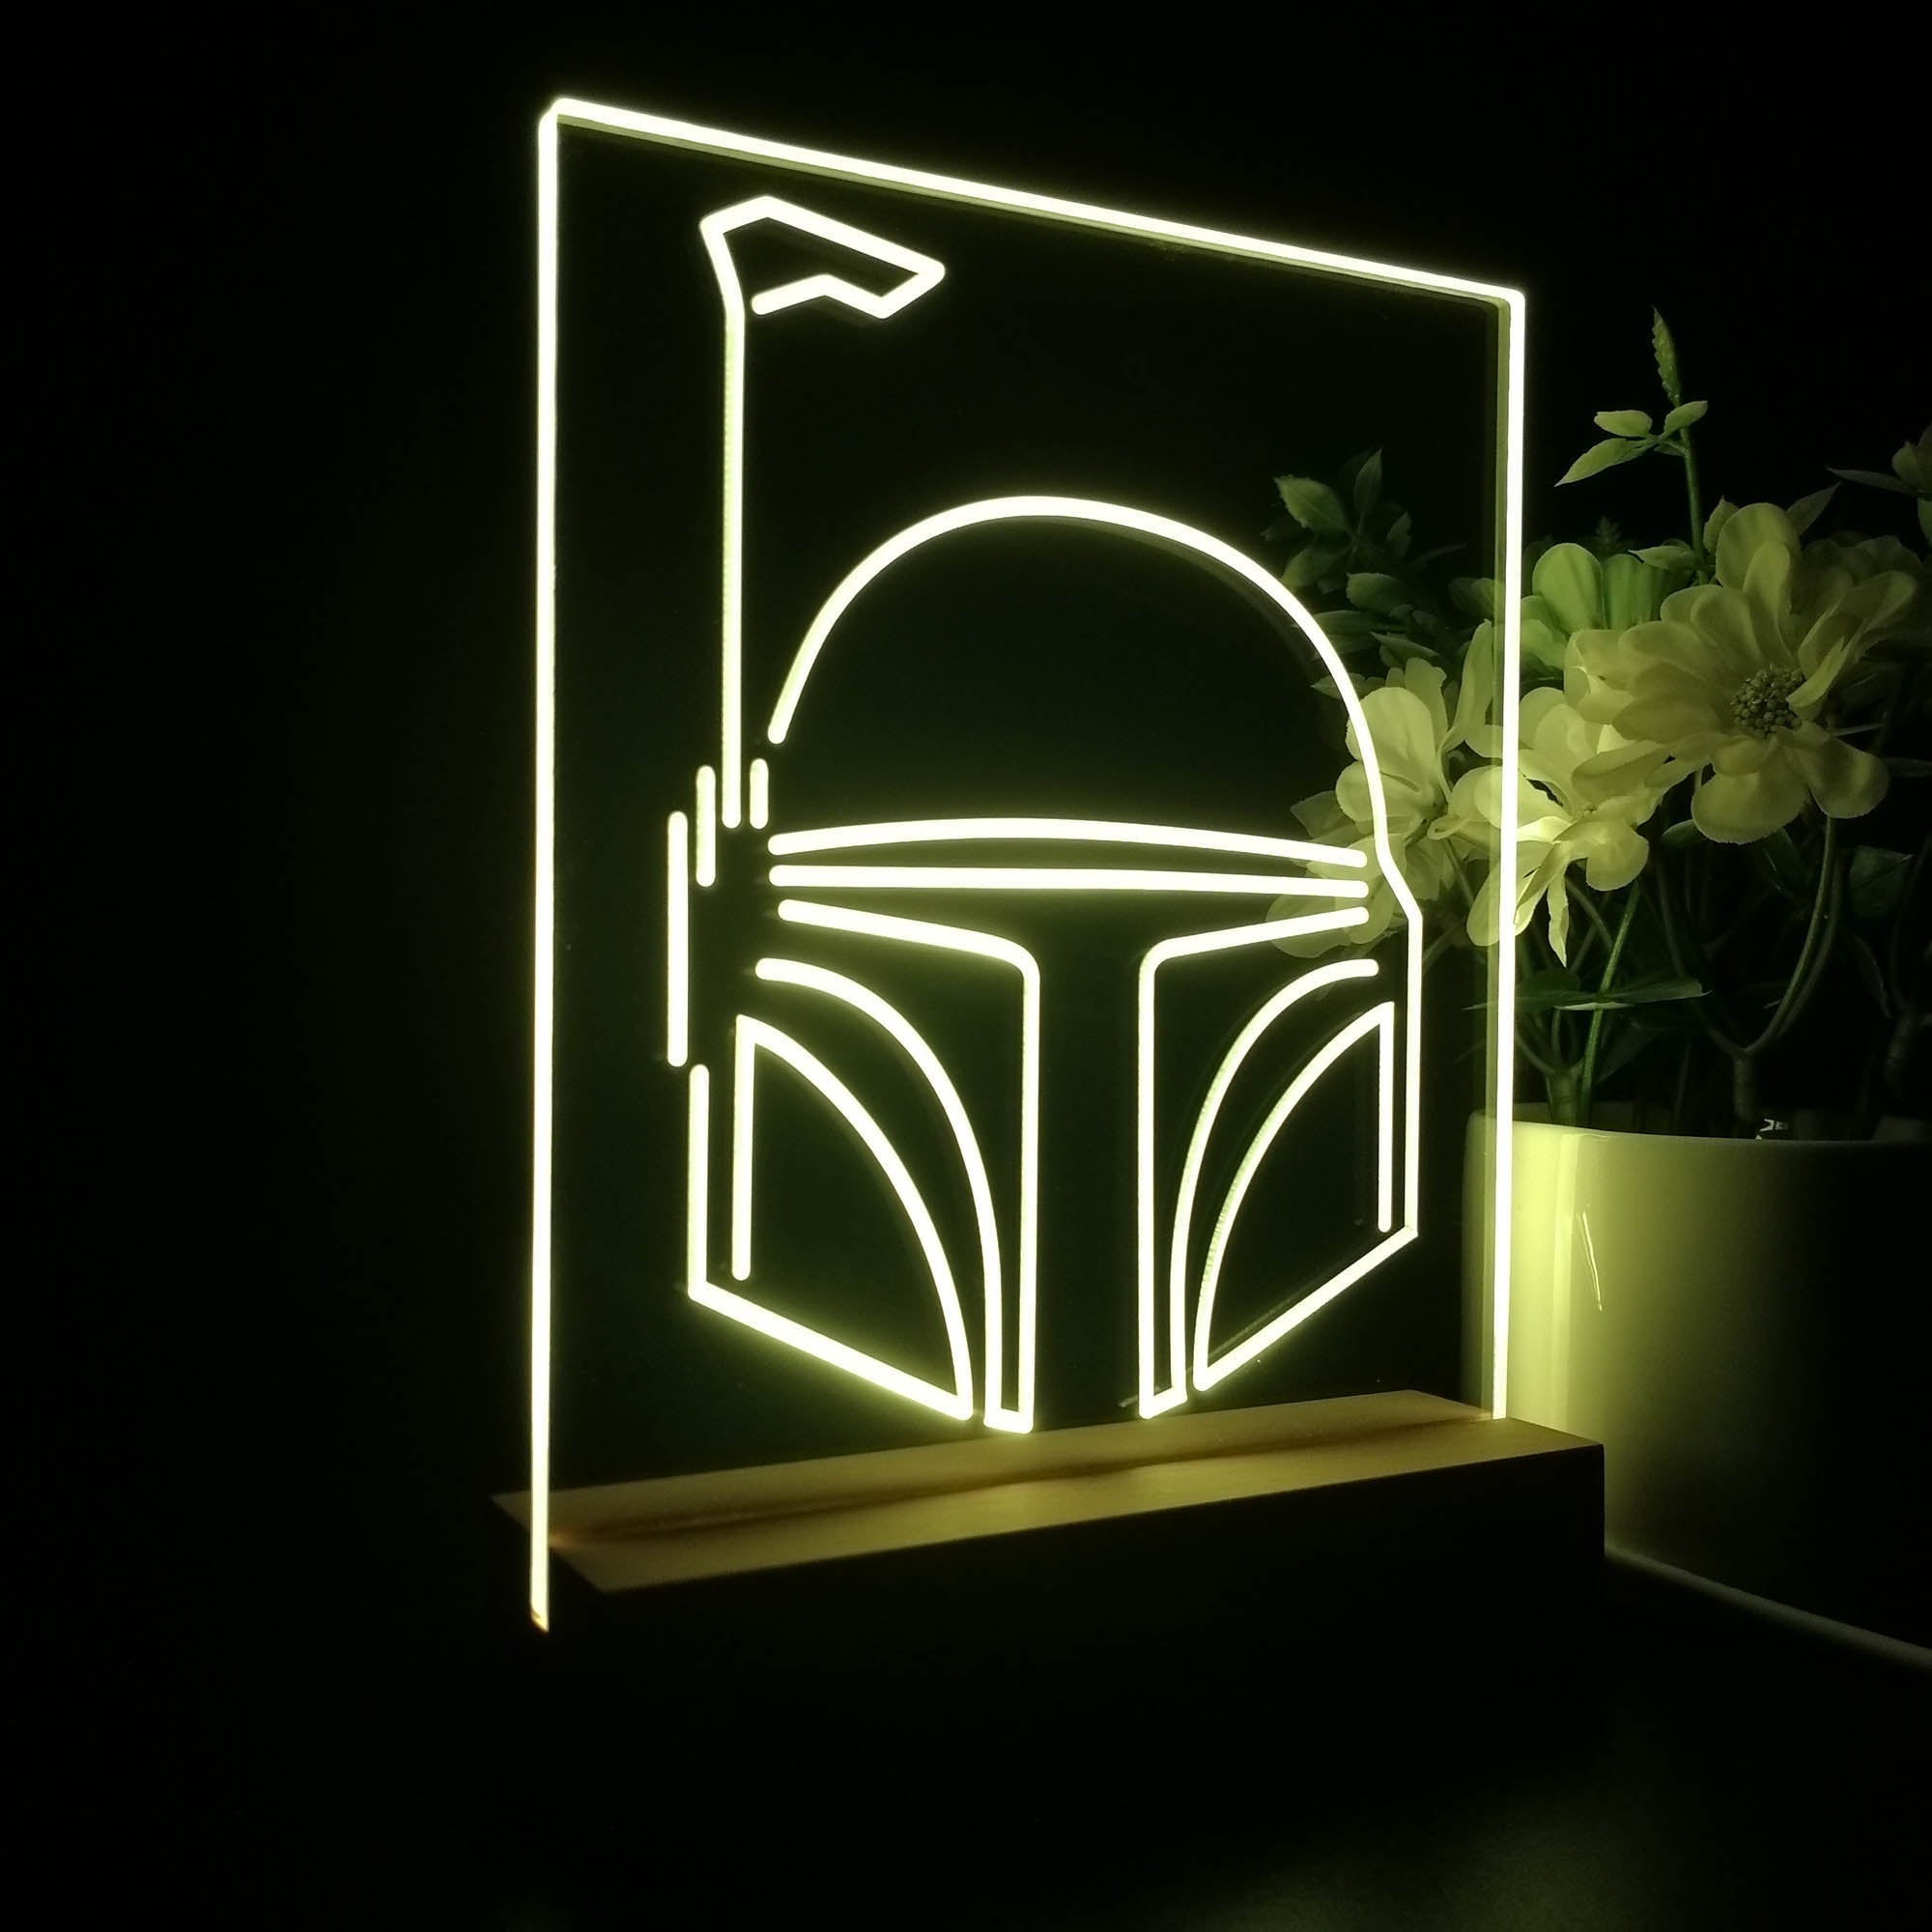 Bobas Fetts Helmet Star Wars 3D Illusion Night Light Desk Lamp